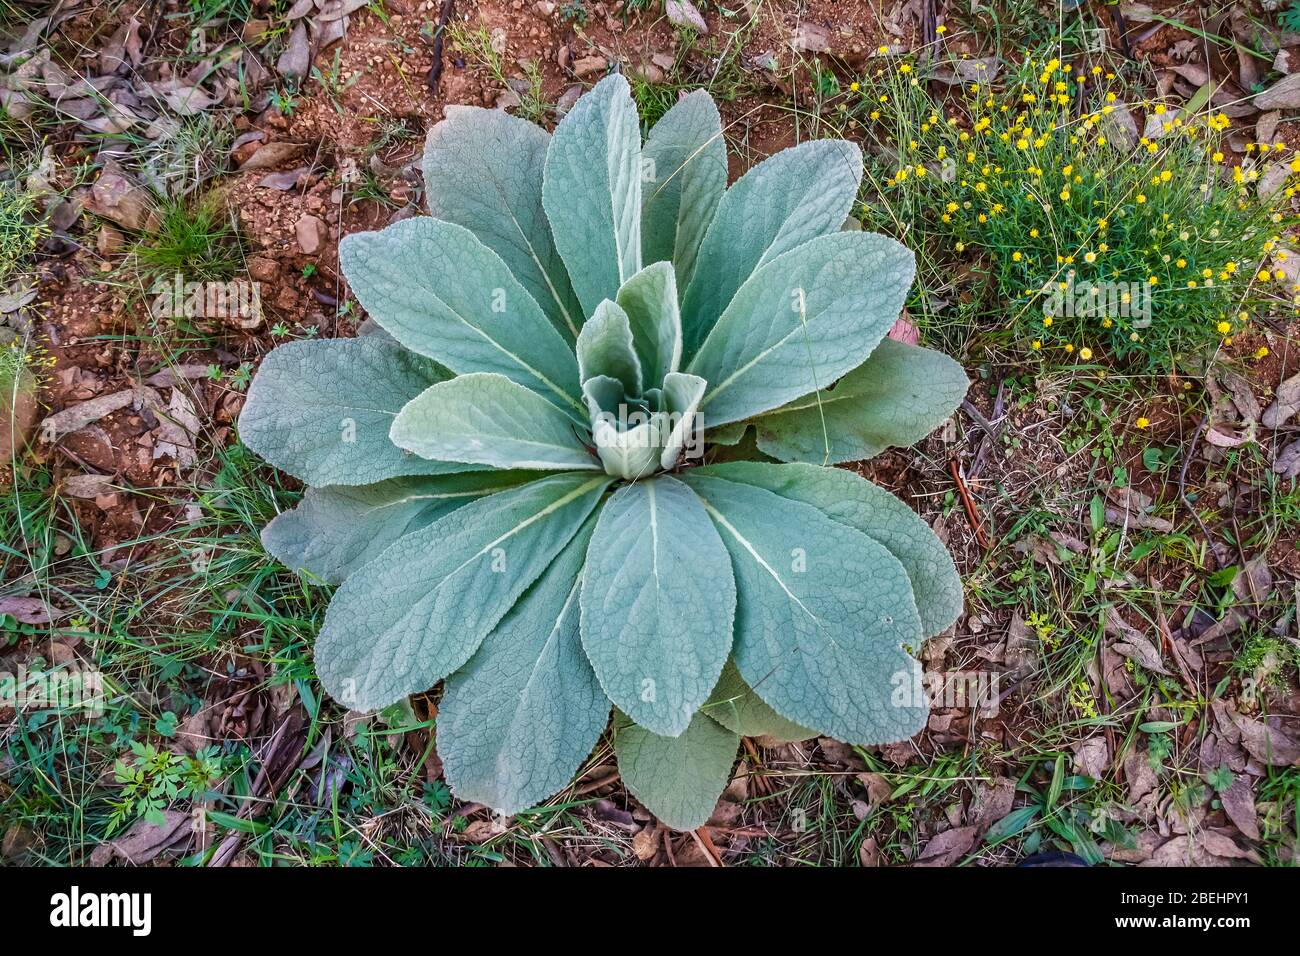 Il Verbascum thapsus, il mullein comune, è una specie di mullein originaria dell'Europa, dell'Africa settentrionale e dell'Asia. Foto Stock